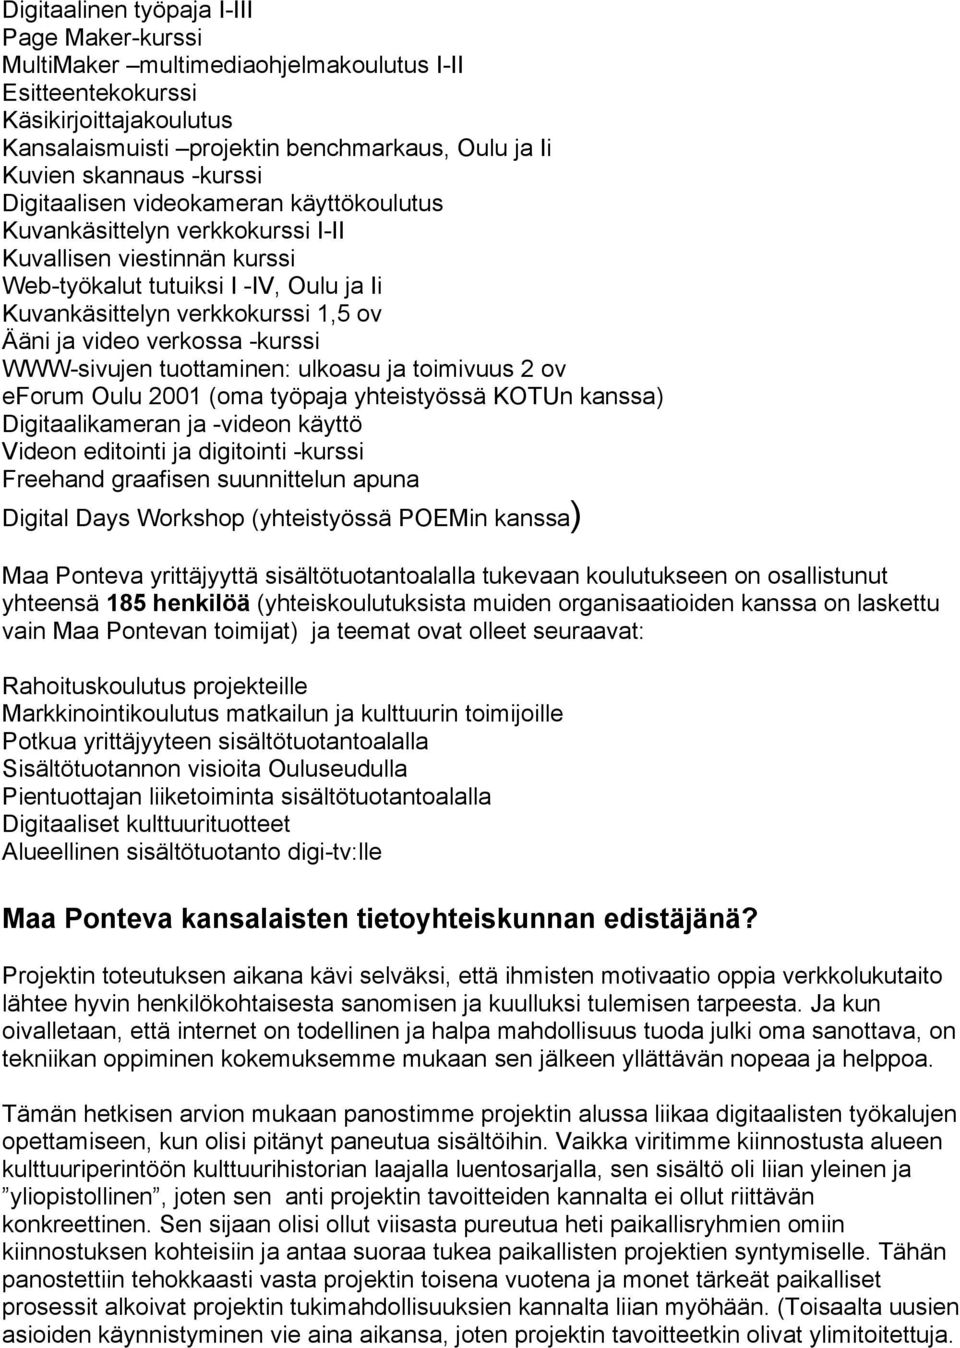 video verkossa -kurssi WWW-sivujen tuottaminen: ulkoasu ja toimivuus 2 ov eforum Oulu 2001 (oma työpaja yhteistyössä KOTUn kanssa) Digitaalikameran ja -videon käyttö Videon editointi ja digitointi